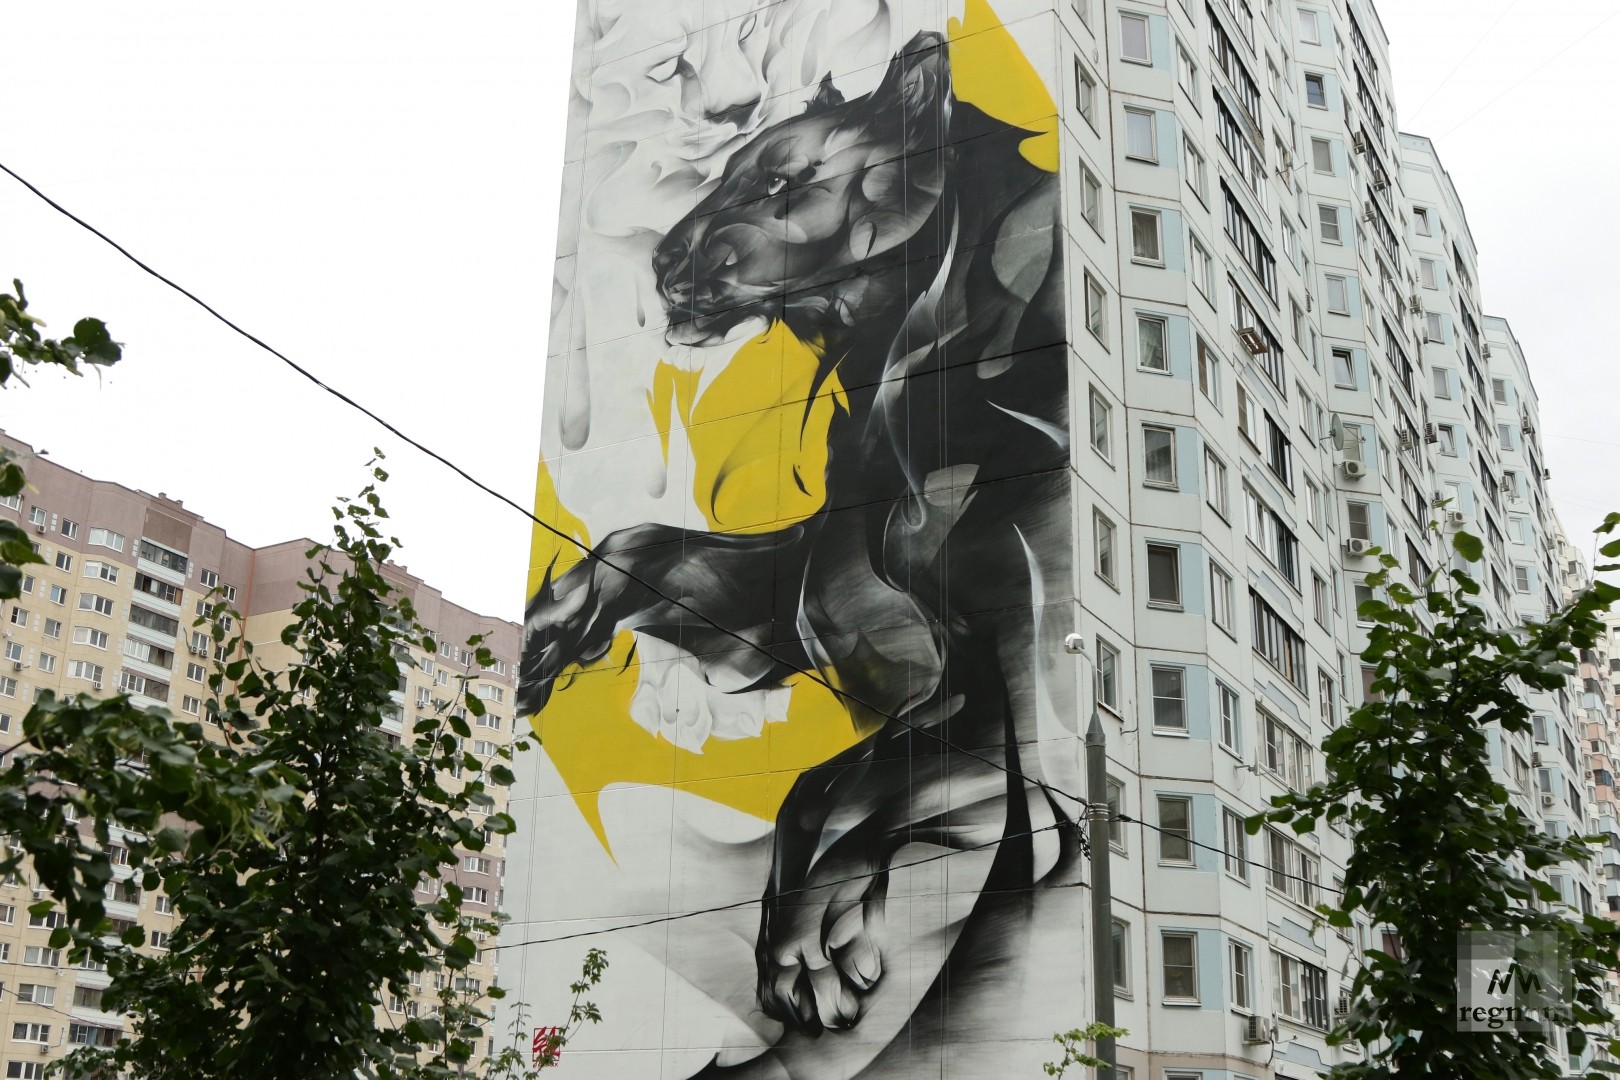 Район Новая Трехгорка принял свой новый облик после окончания  граффити фестиваля Urban Morphogenesis